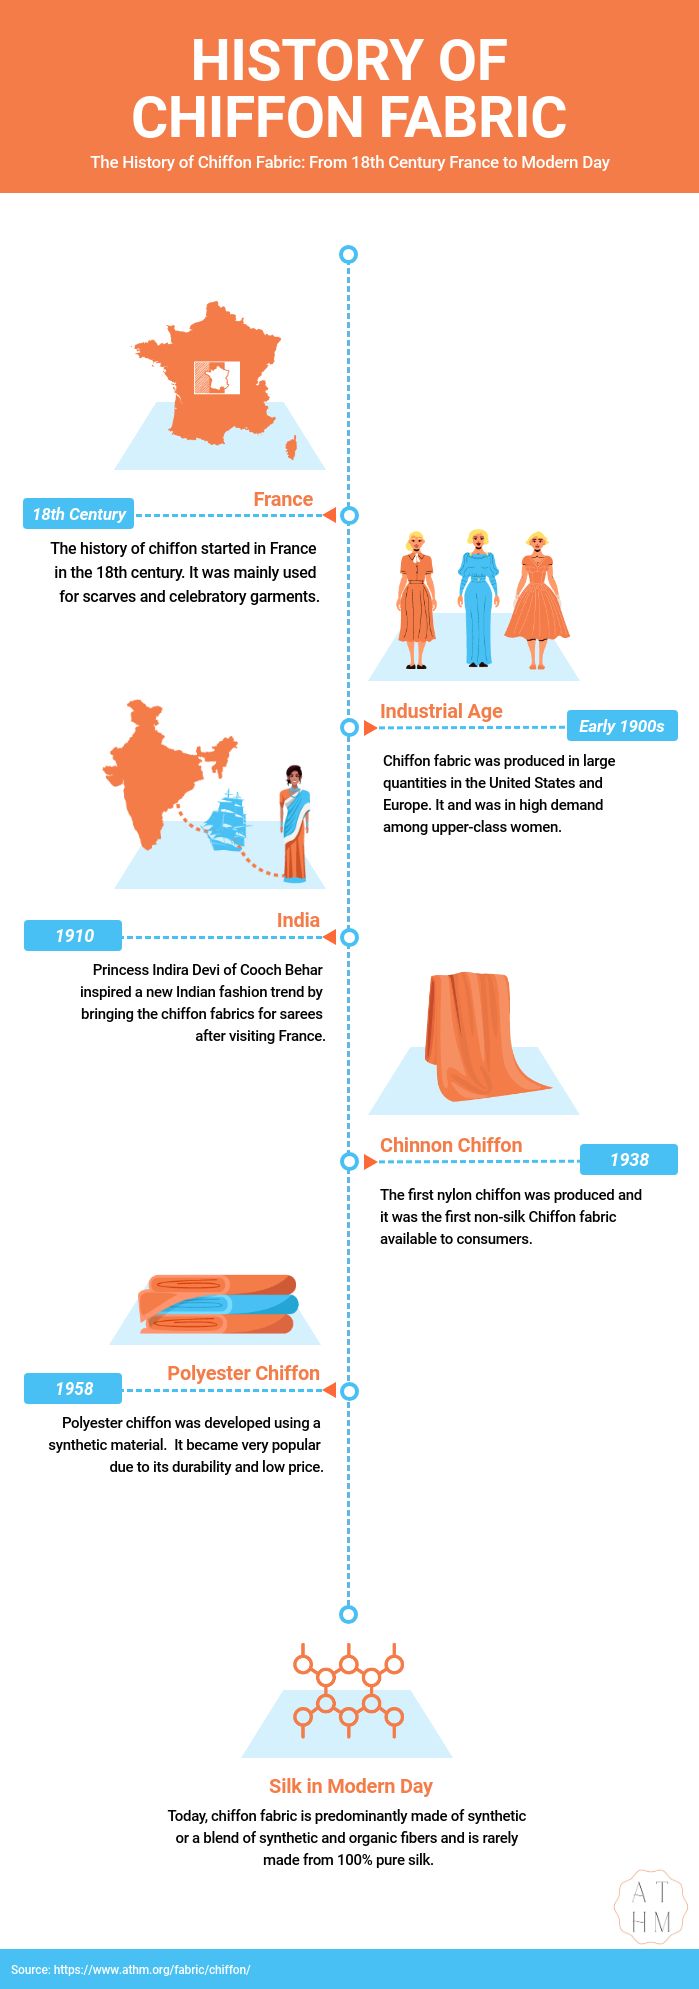 History of Chiffon Fabric